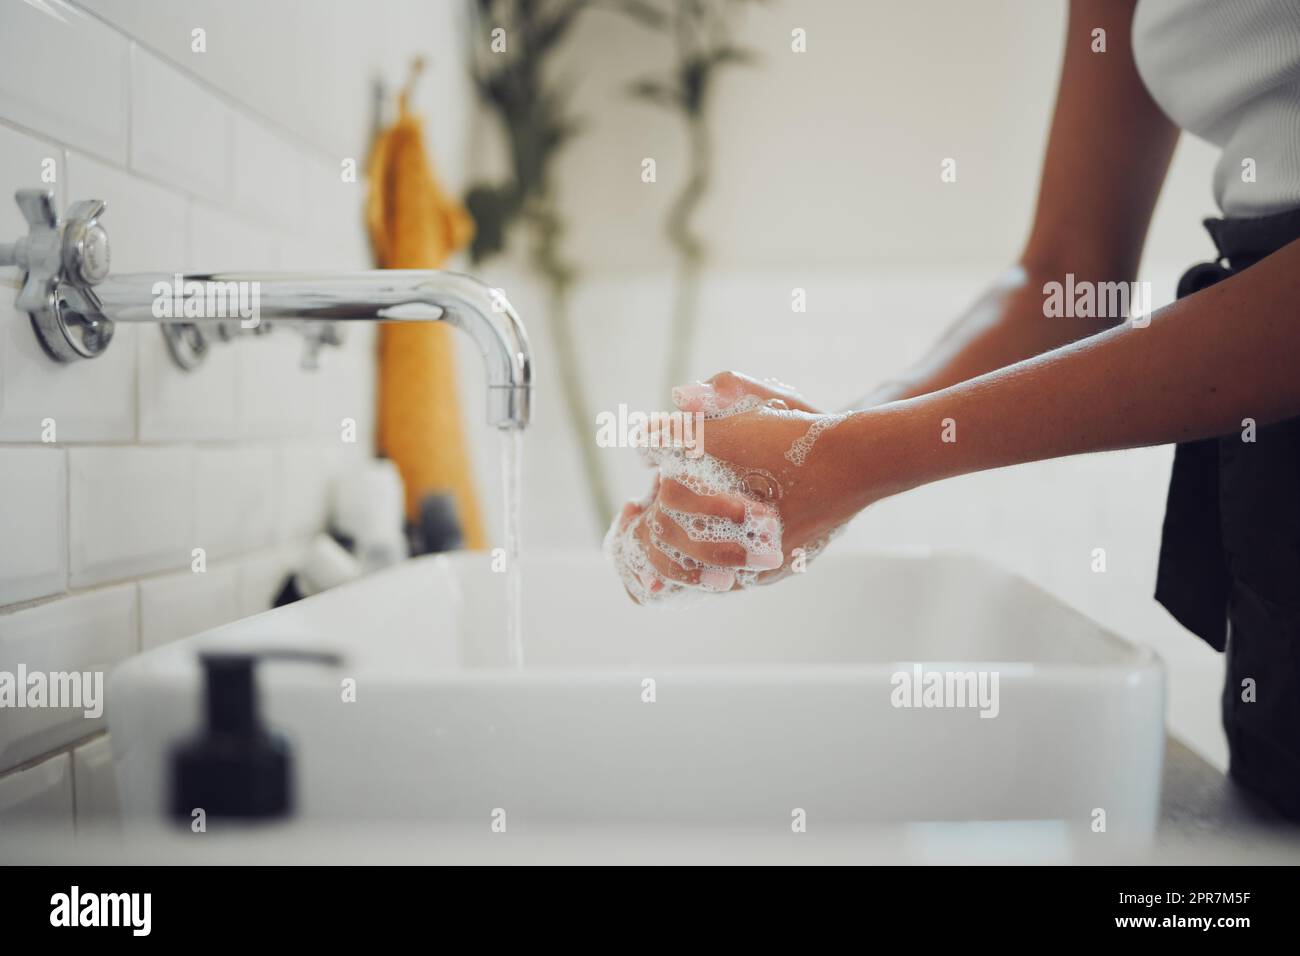 Cierre de las manos femeninas usando jabón y lavándose las manos bajo el grifo con agua limpia. Mujer frotándose las manos juntas antes de enjuagarse para la prevención del coronavirus Foto de stock